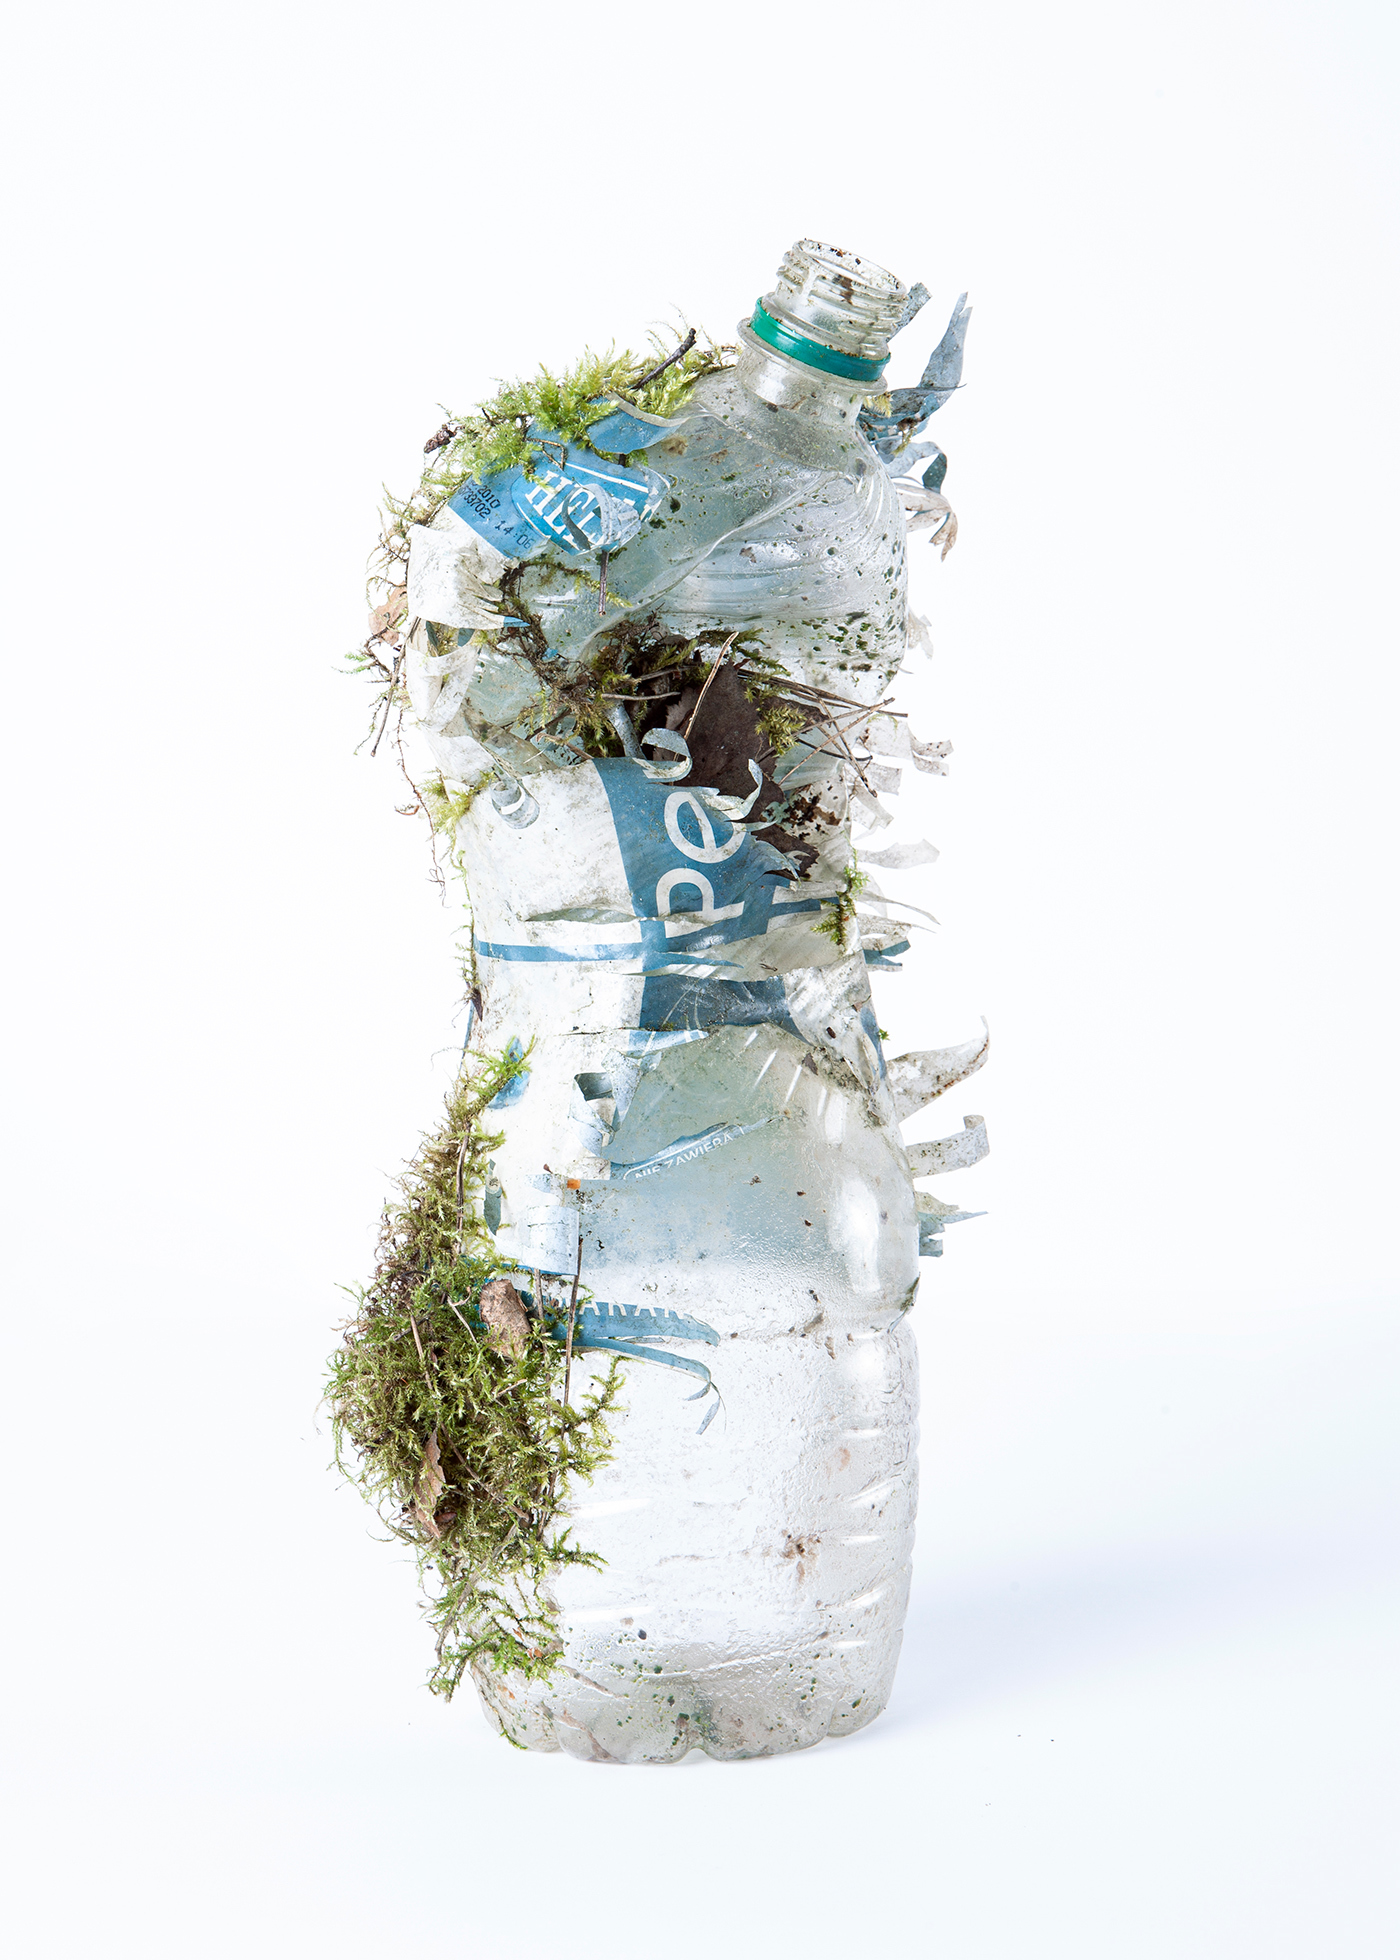 Zgnieciona plastikowa butelka pokryta ziemią i roślinnością.